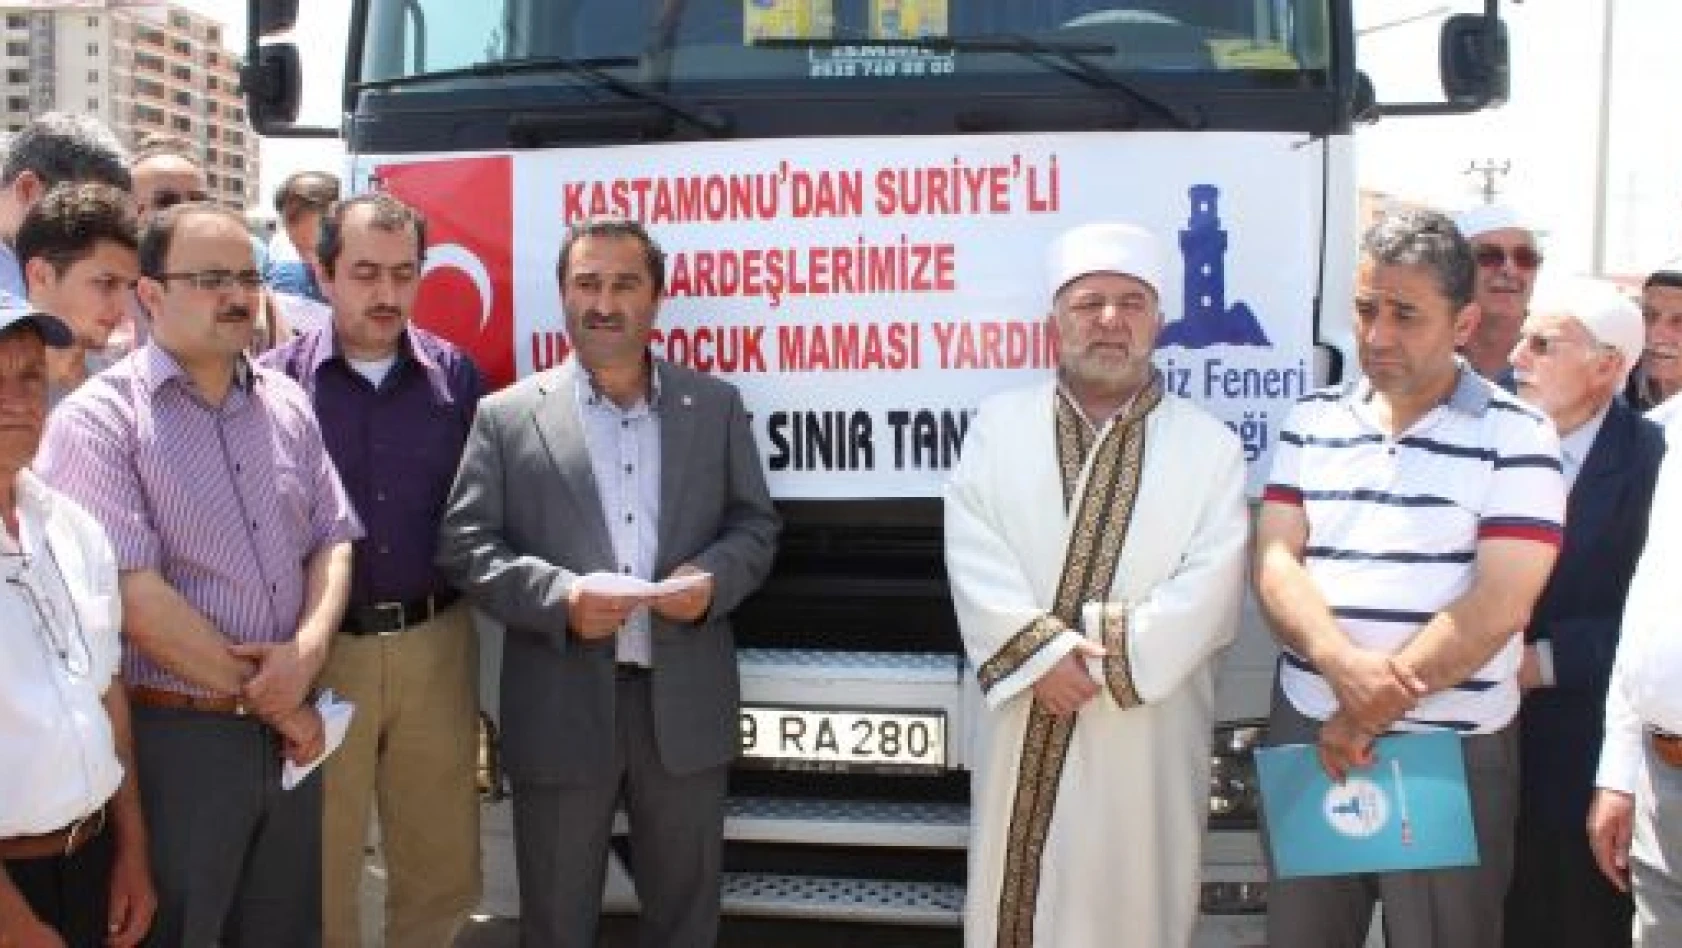 Kastamonu'dan Suriye'ye Yardım